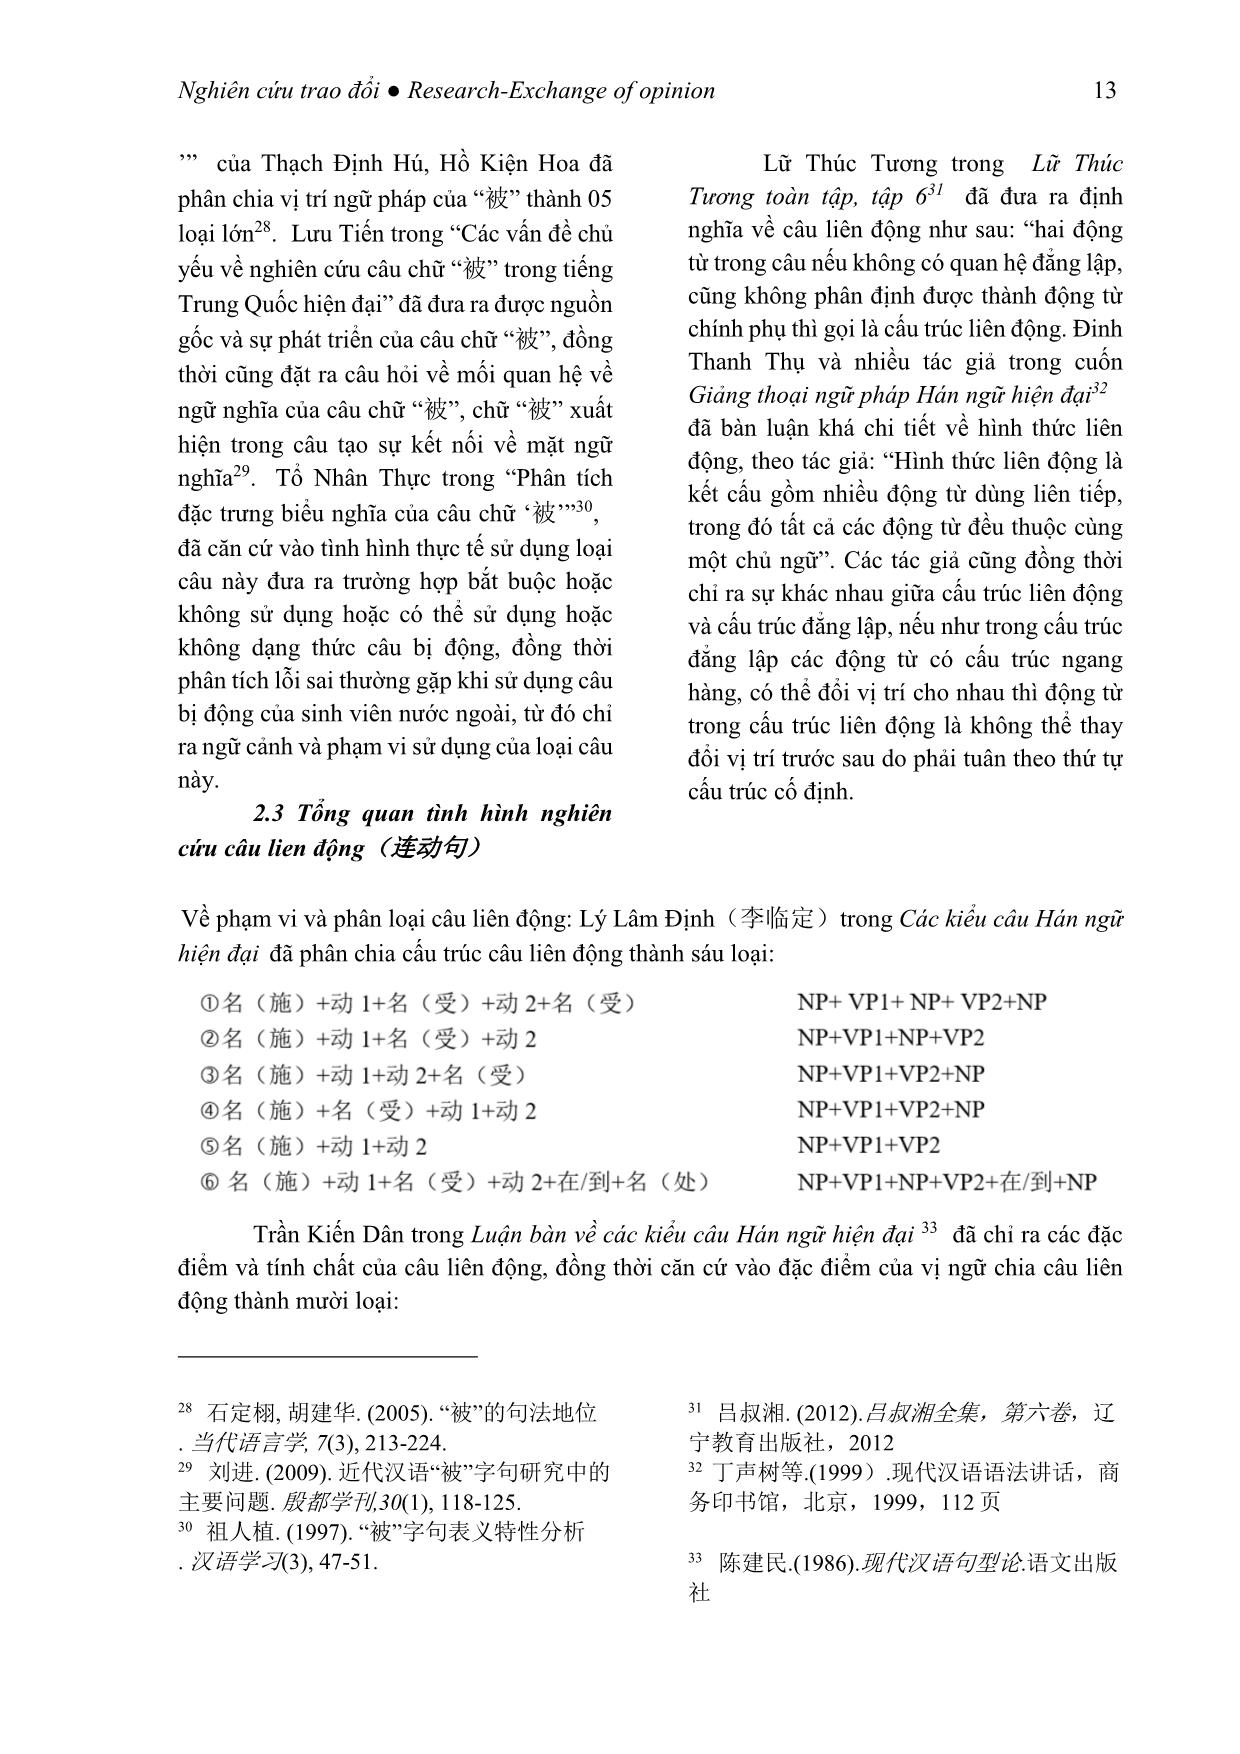 Tình hình nghiên cứu các kiểu câu đặc biệt trong tiếng Trung Quốc tại Trung Quốc trang 5